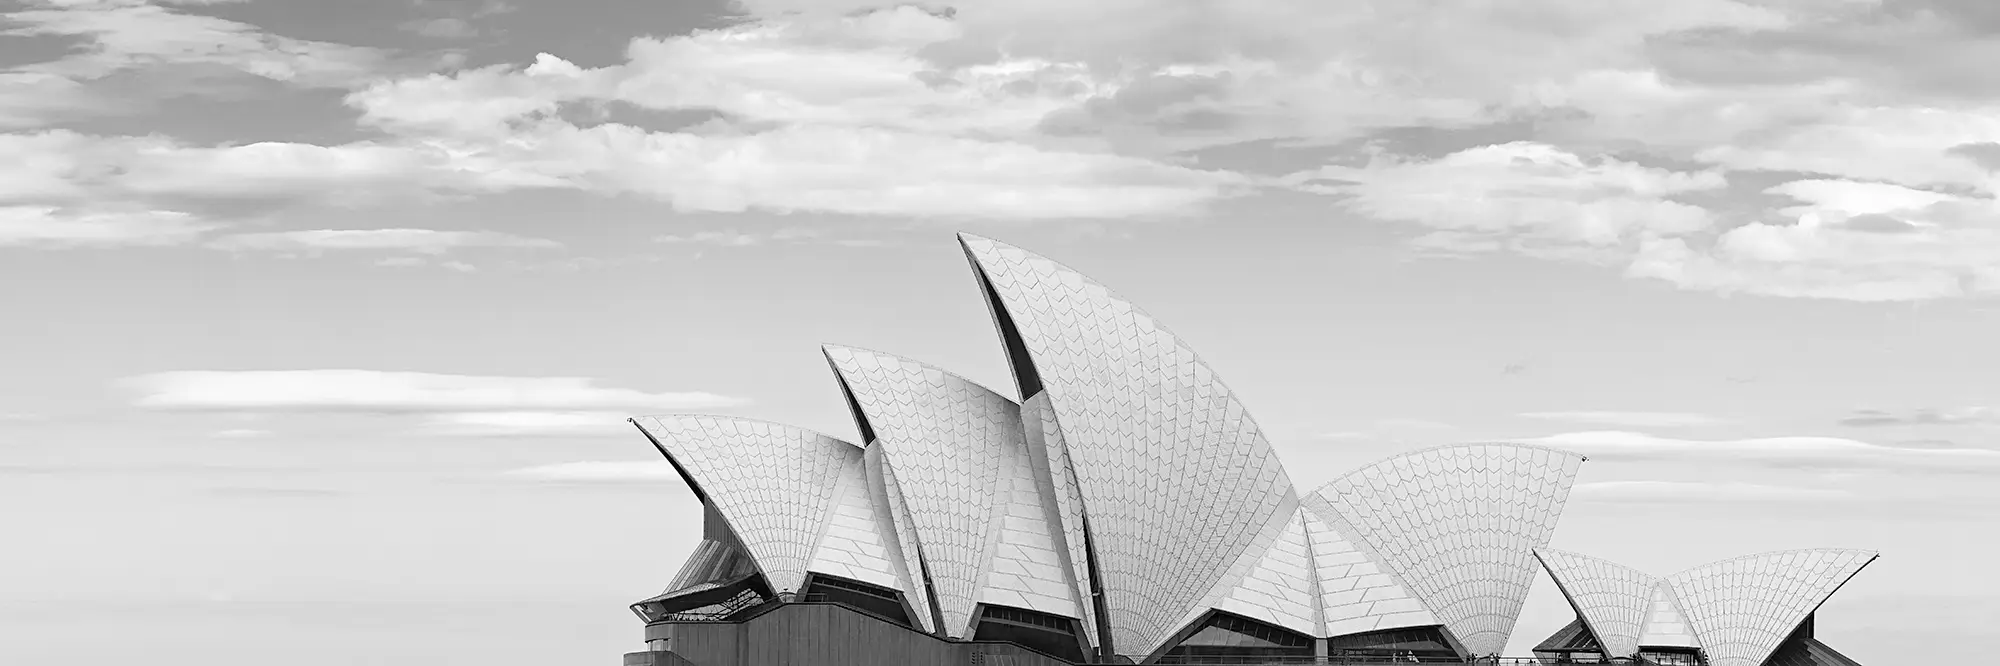 Sydney Opera House Panoramic Image